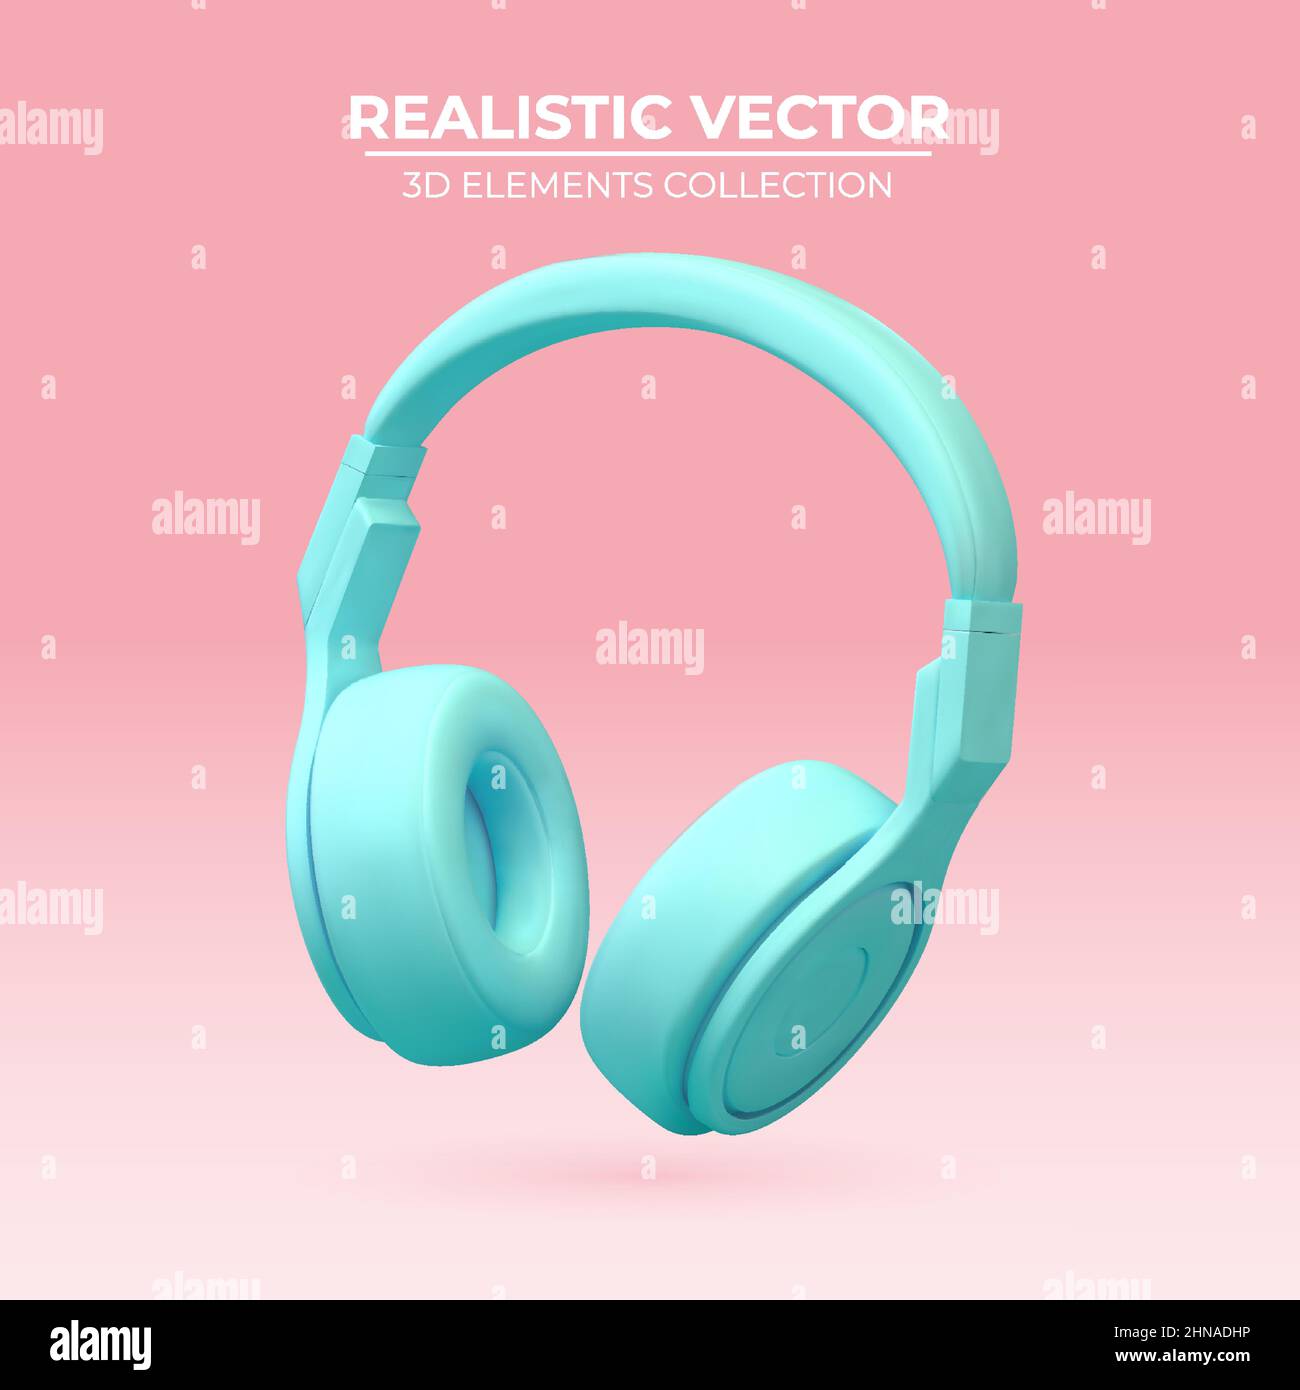 Realistische kabellose Ohrhörer in trendigen Farben. 3D Vektor-Kopfhörerelement. Realistisches Objekt für Musik- oder Spielkonzept, Poster-Design, Flyer, Website. Stock Vektor